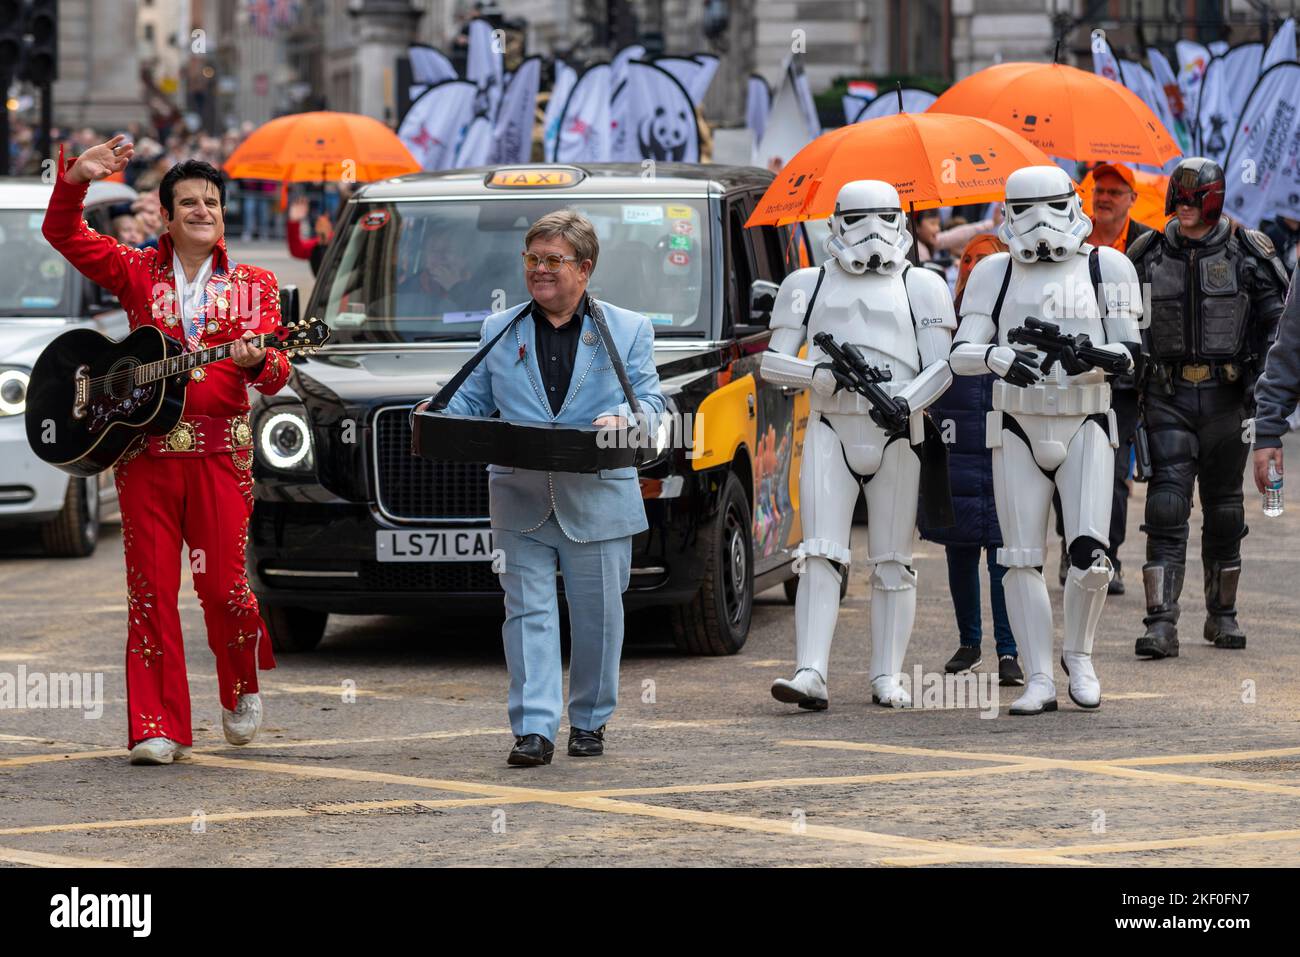 LONDON TAXI FAHRER WOHLTÄTIGKEITSORGANISATION FÜR KINDER bei der Lord Mayor's Show Parade in der City of London, Großbritannien. Gleichaussehende Teilnehmer Stockfoto